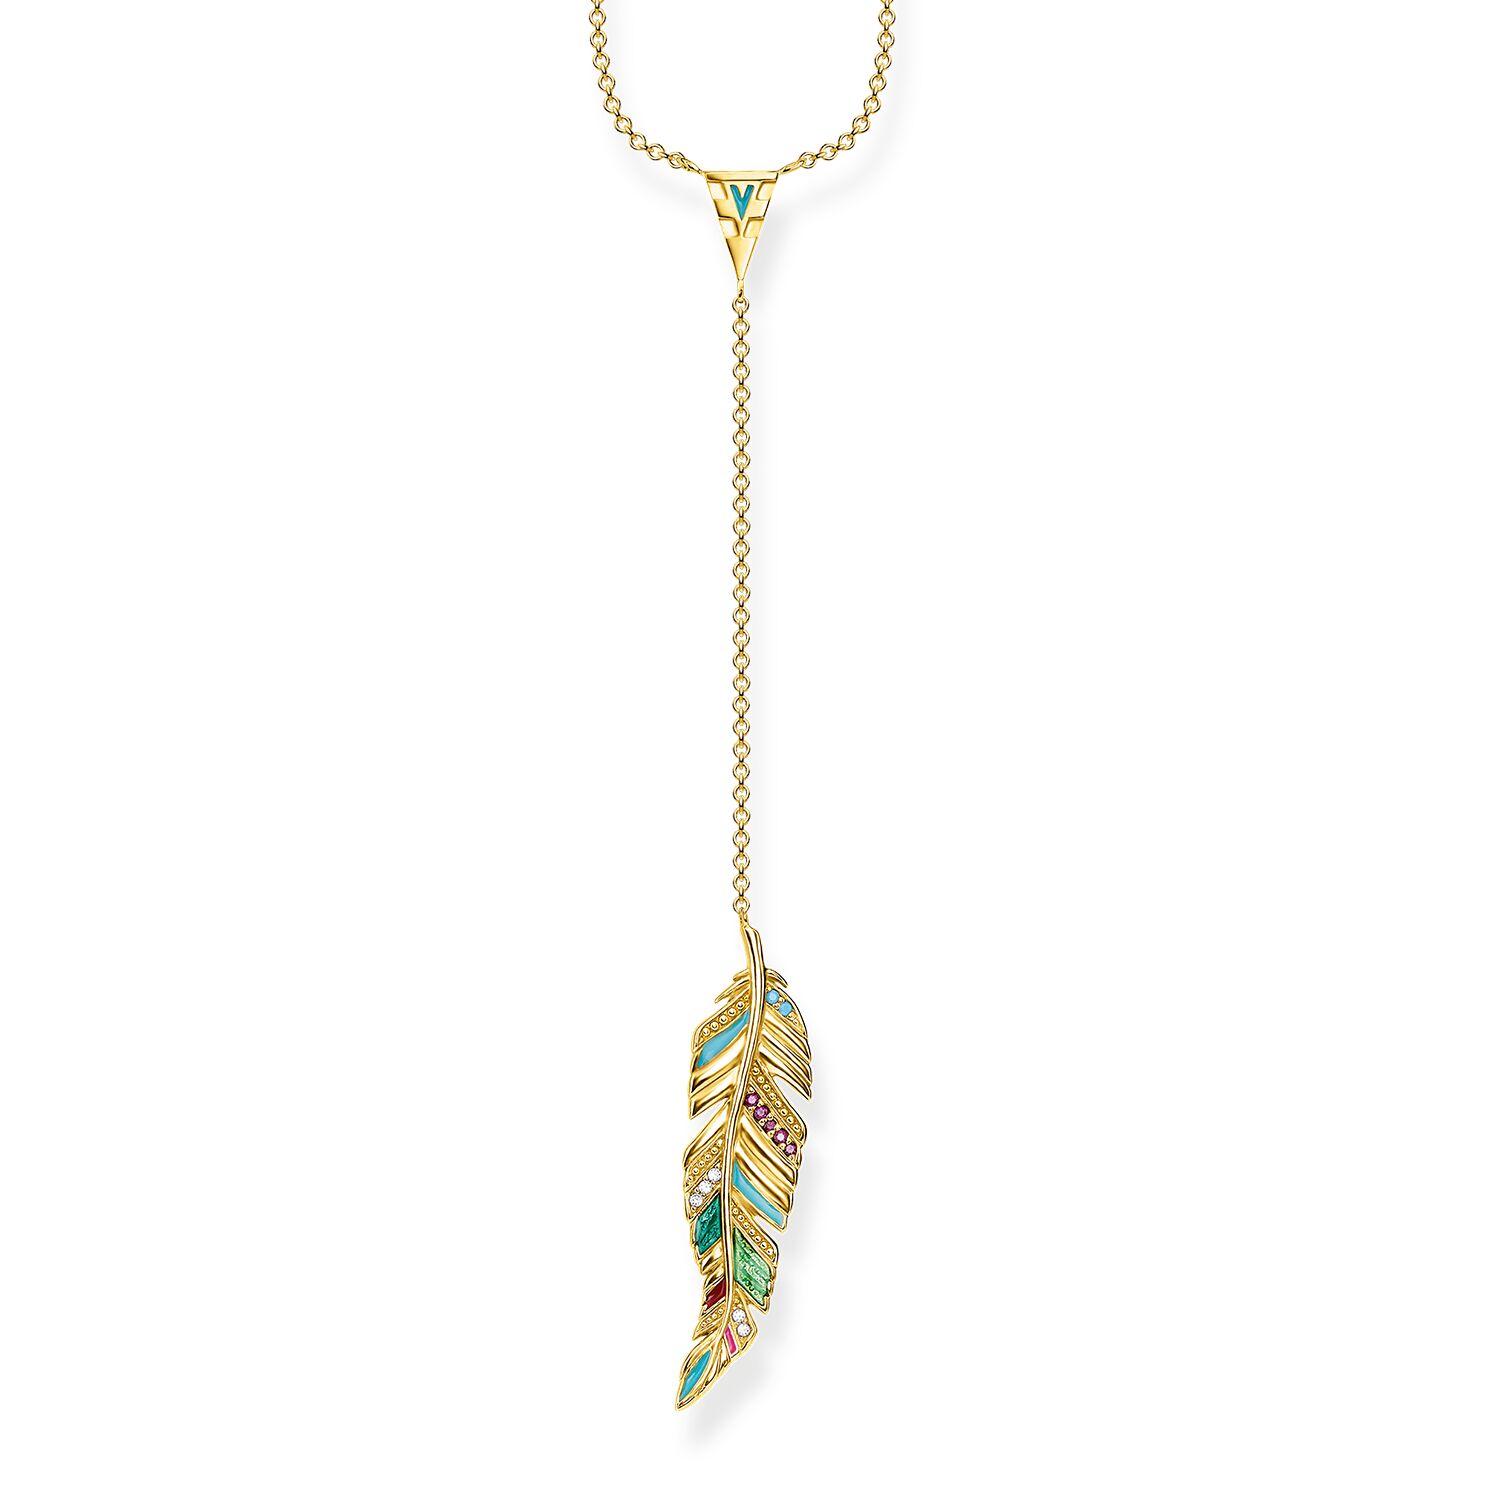 Grossist OEM/ODM smycken Anpassat halsband tillverkat av 18k gult guldplätering, 925 Sterling silver, kall emalj